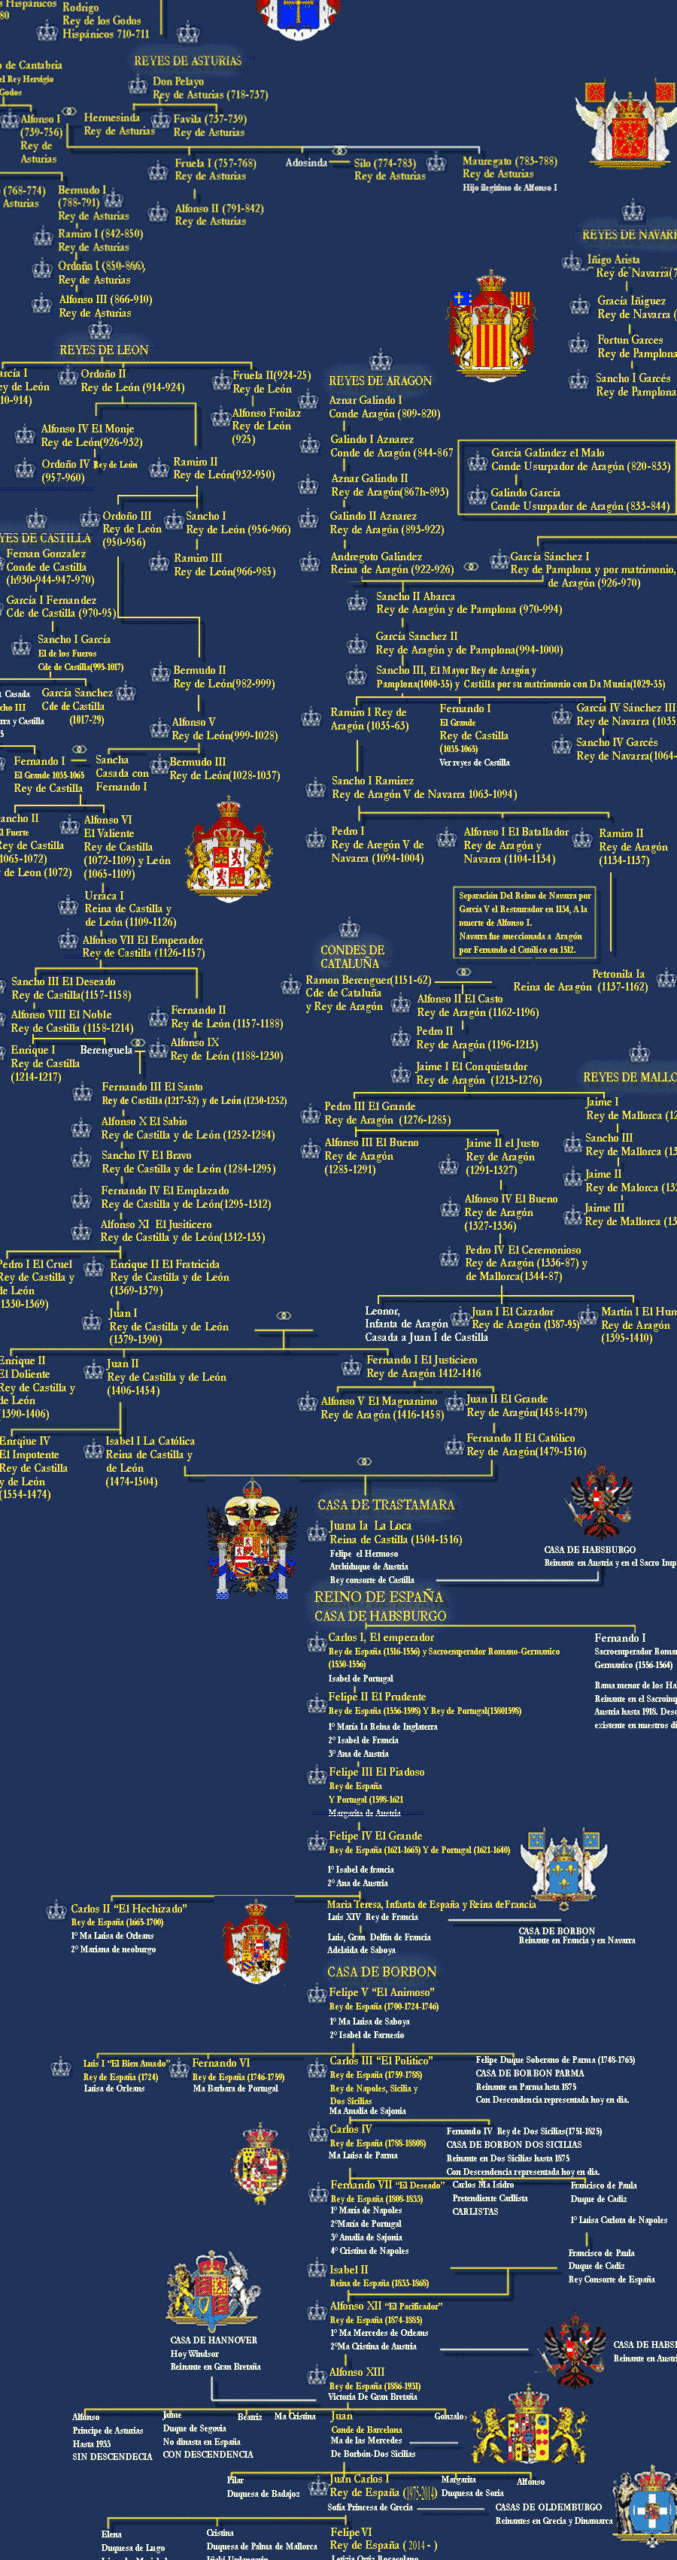 La historia de la dinastía Bourbon: Árbol genealógico familiar